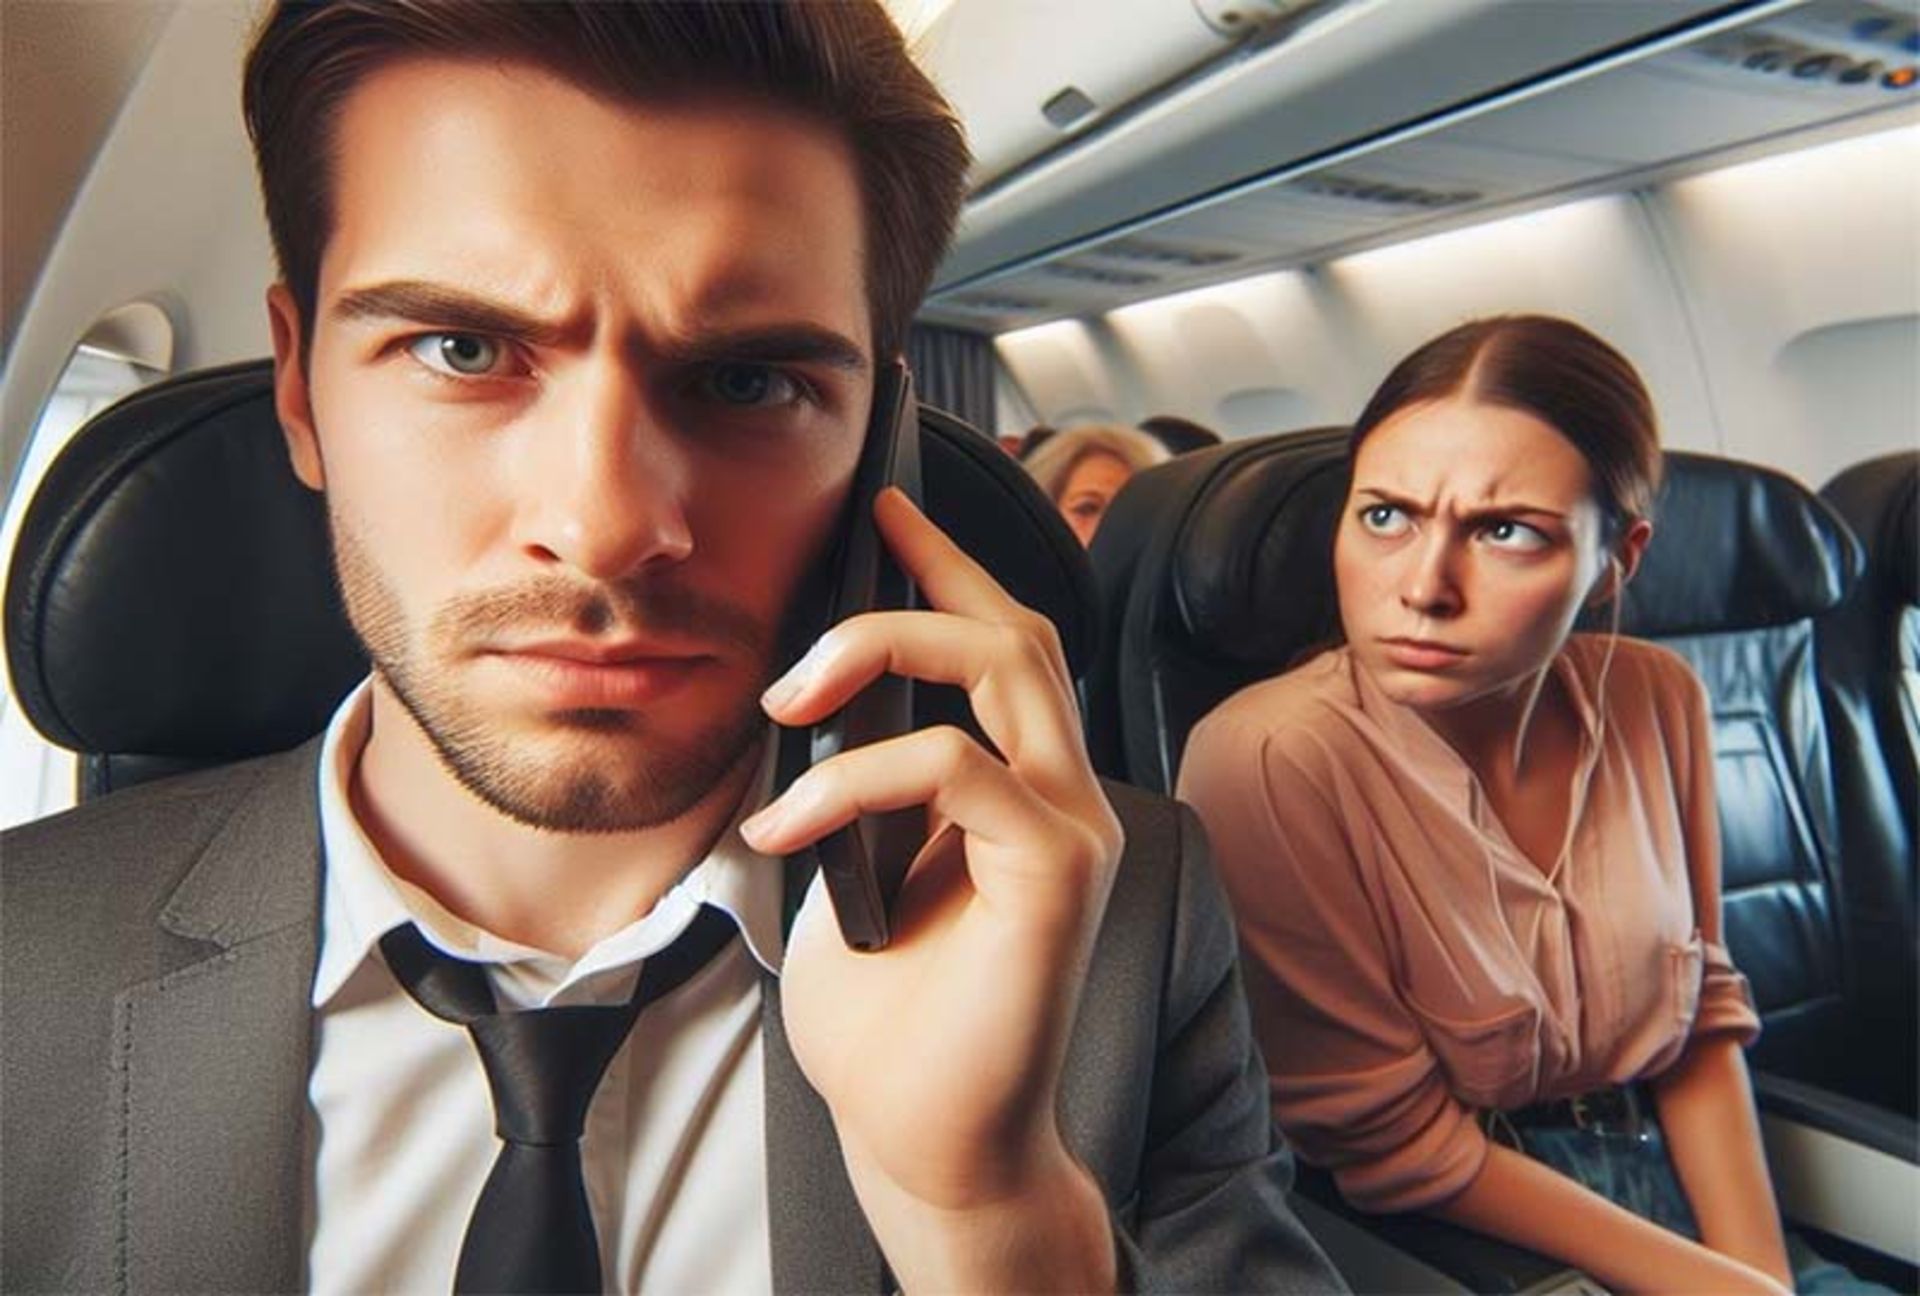 شخصی در حال صحبت با تلفن همراه در هواپیما است و شخص دیگری با عصبانیت به او نگاه می کند.